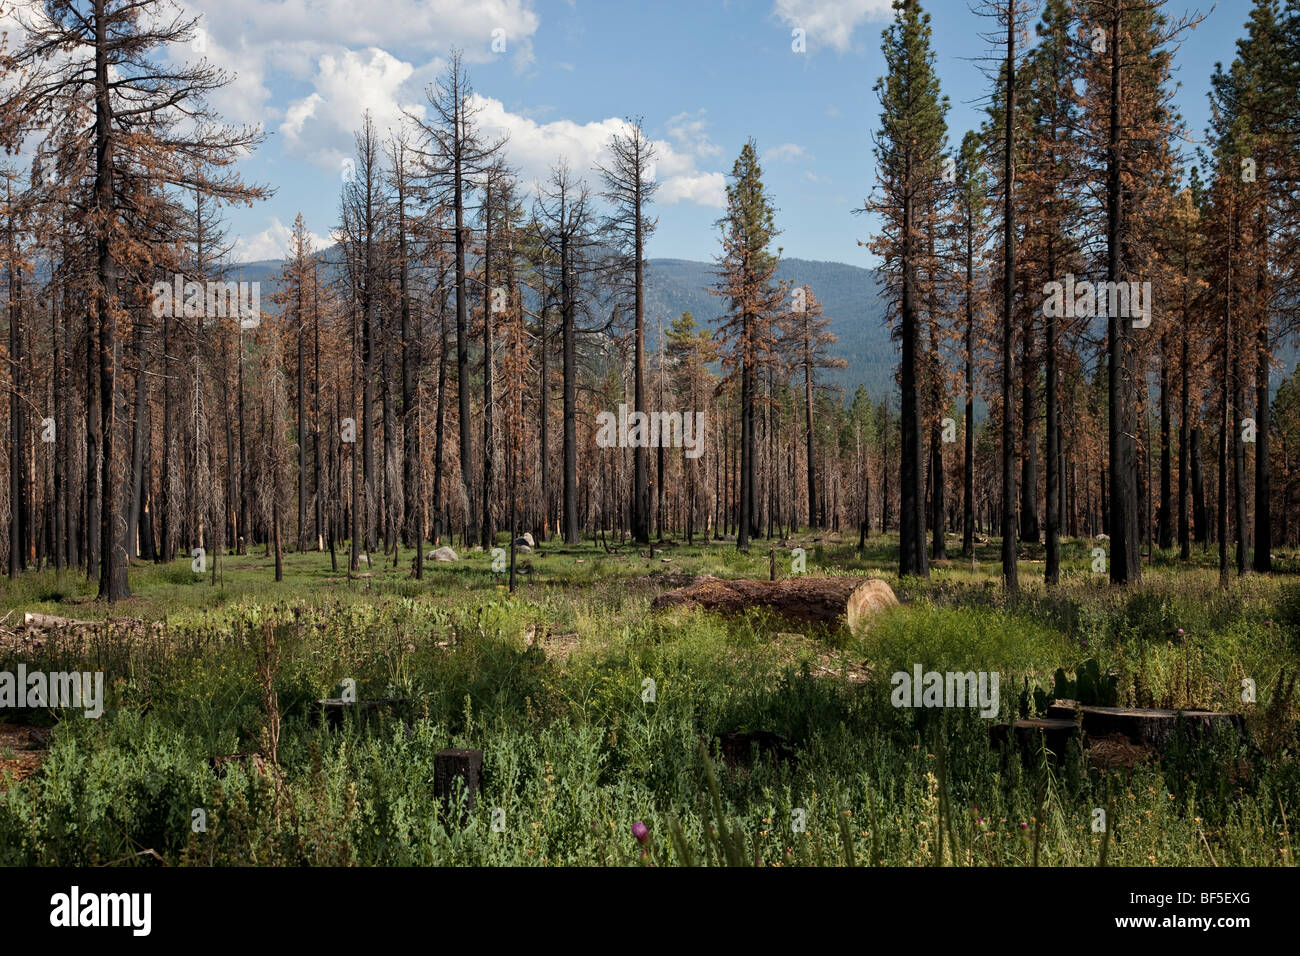 Les dommages causés par l'incendie de forêt dans la région de la Sierra Nevada, en Californie, montrant morts et pins survivants Banque D'Images